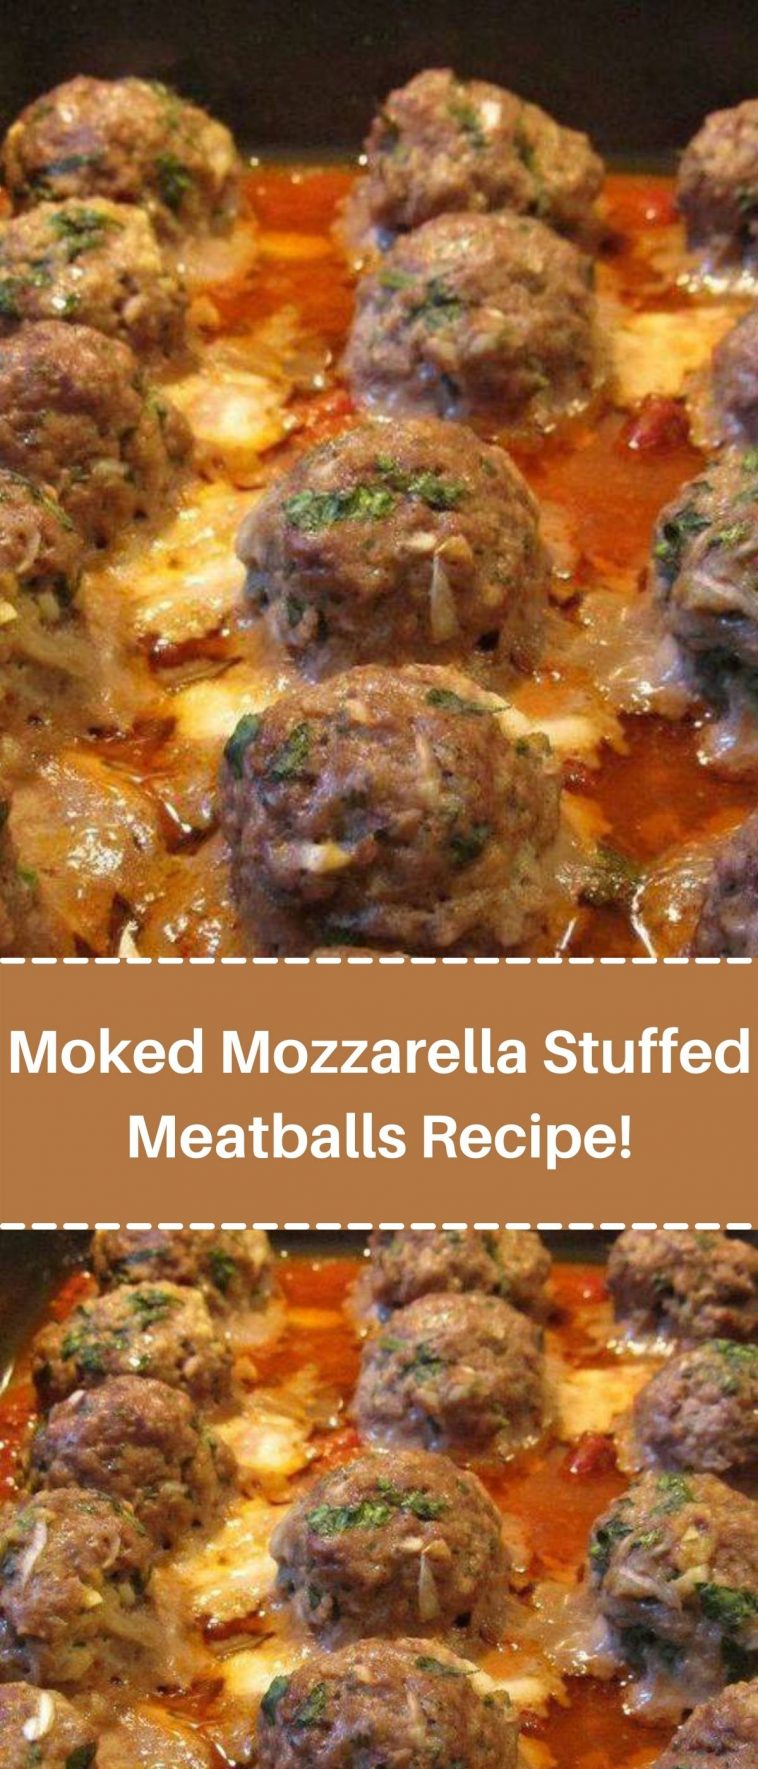 Moked Mozzarella Stuffed Meatballs Recipe!